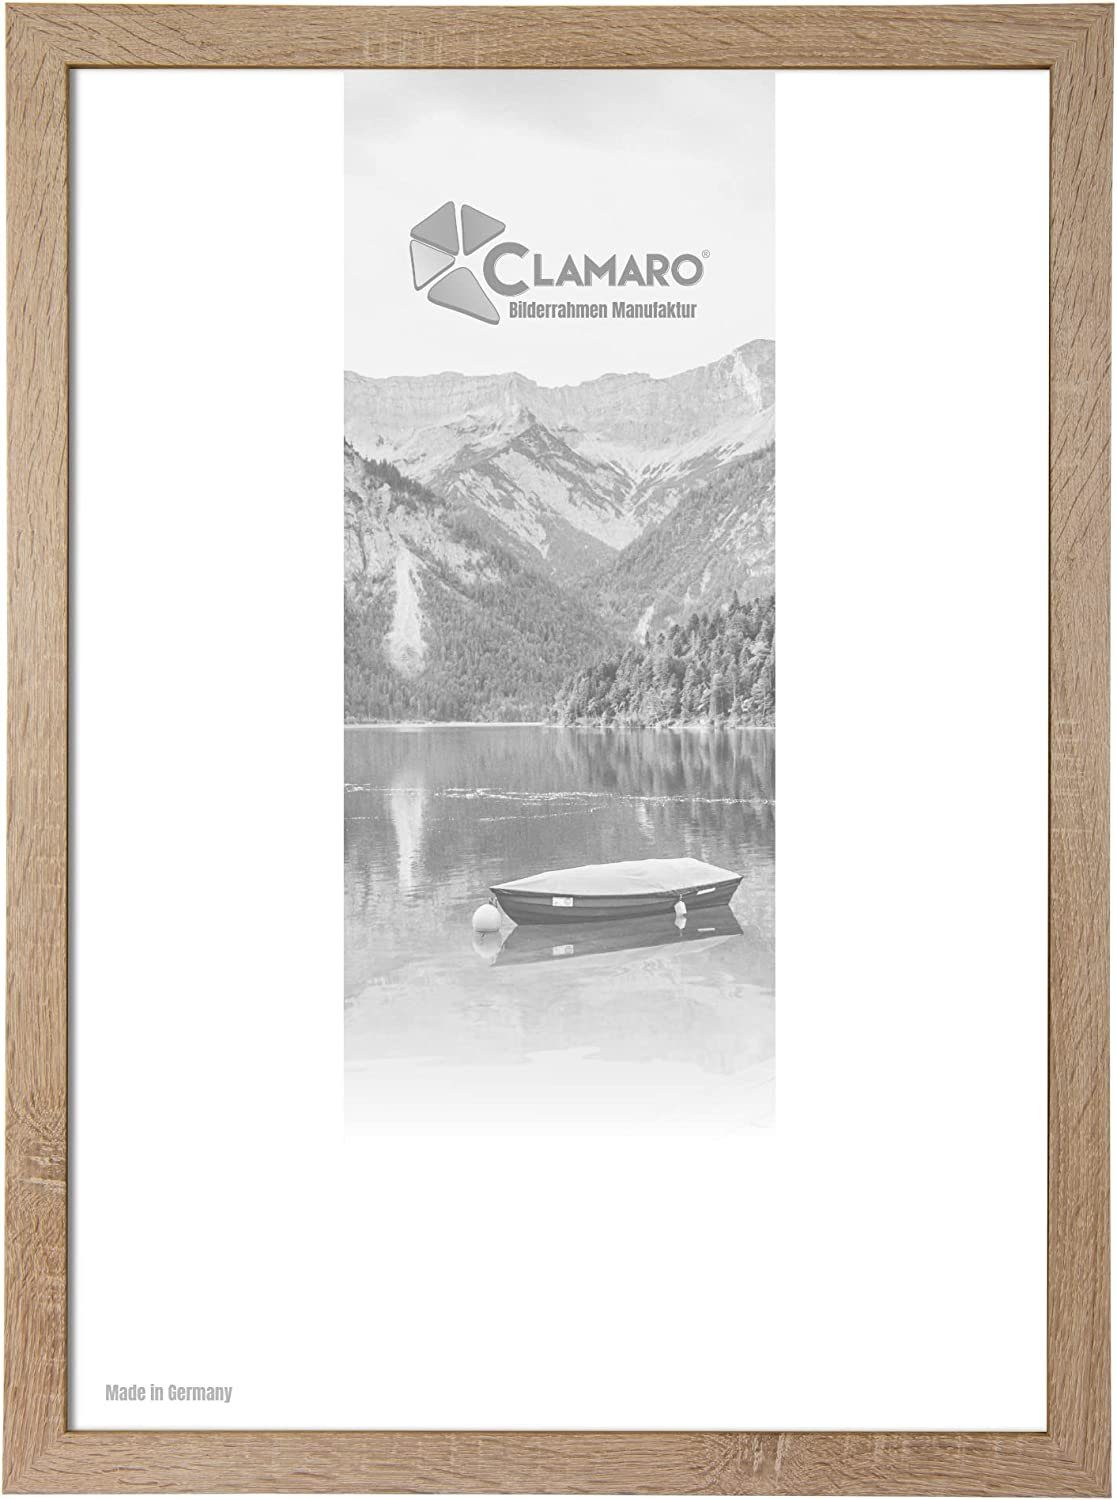 Clamaro Bilderrahmen Bilderrahmen Eiche Sonoma CLAMARO Collage nach Maß FSC® Holz Modern eckig M3016 25x25 in Eiche Sonoma